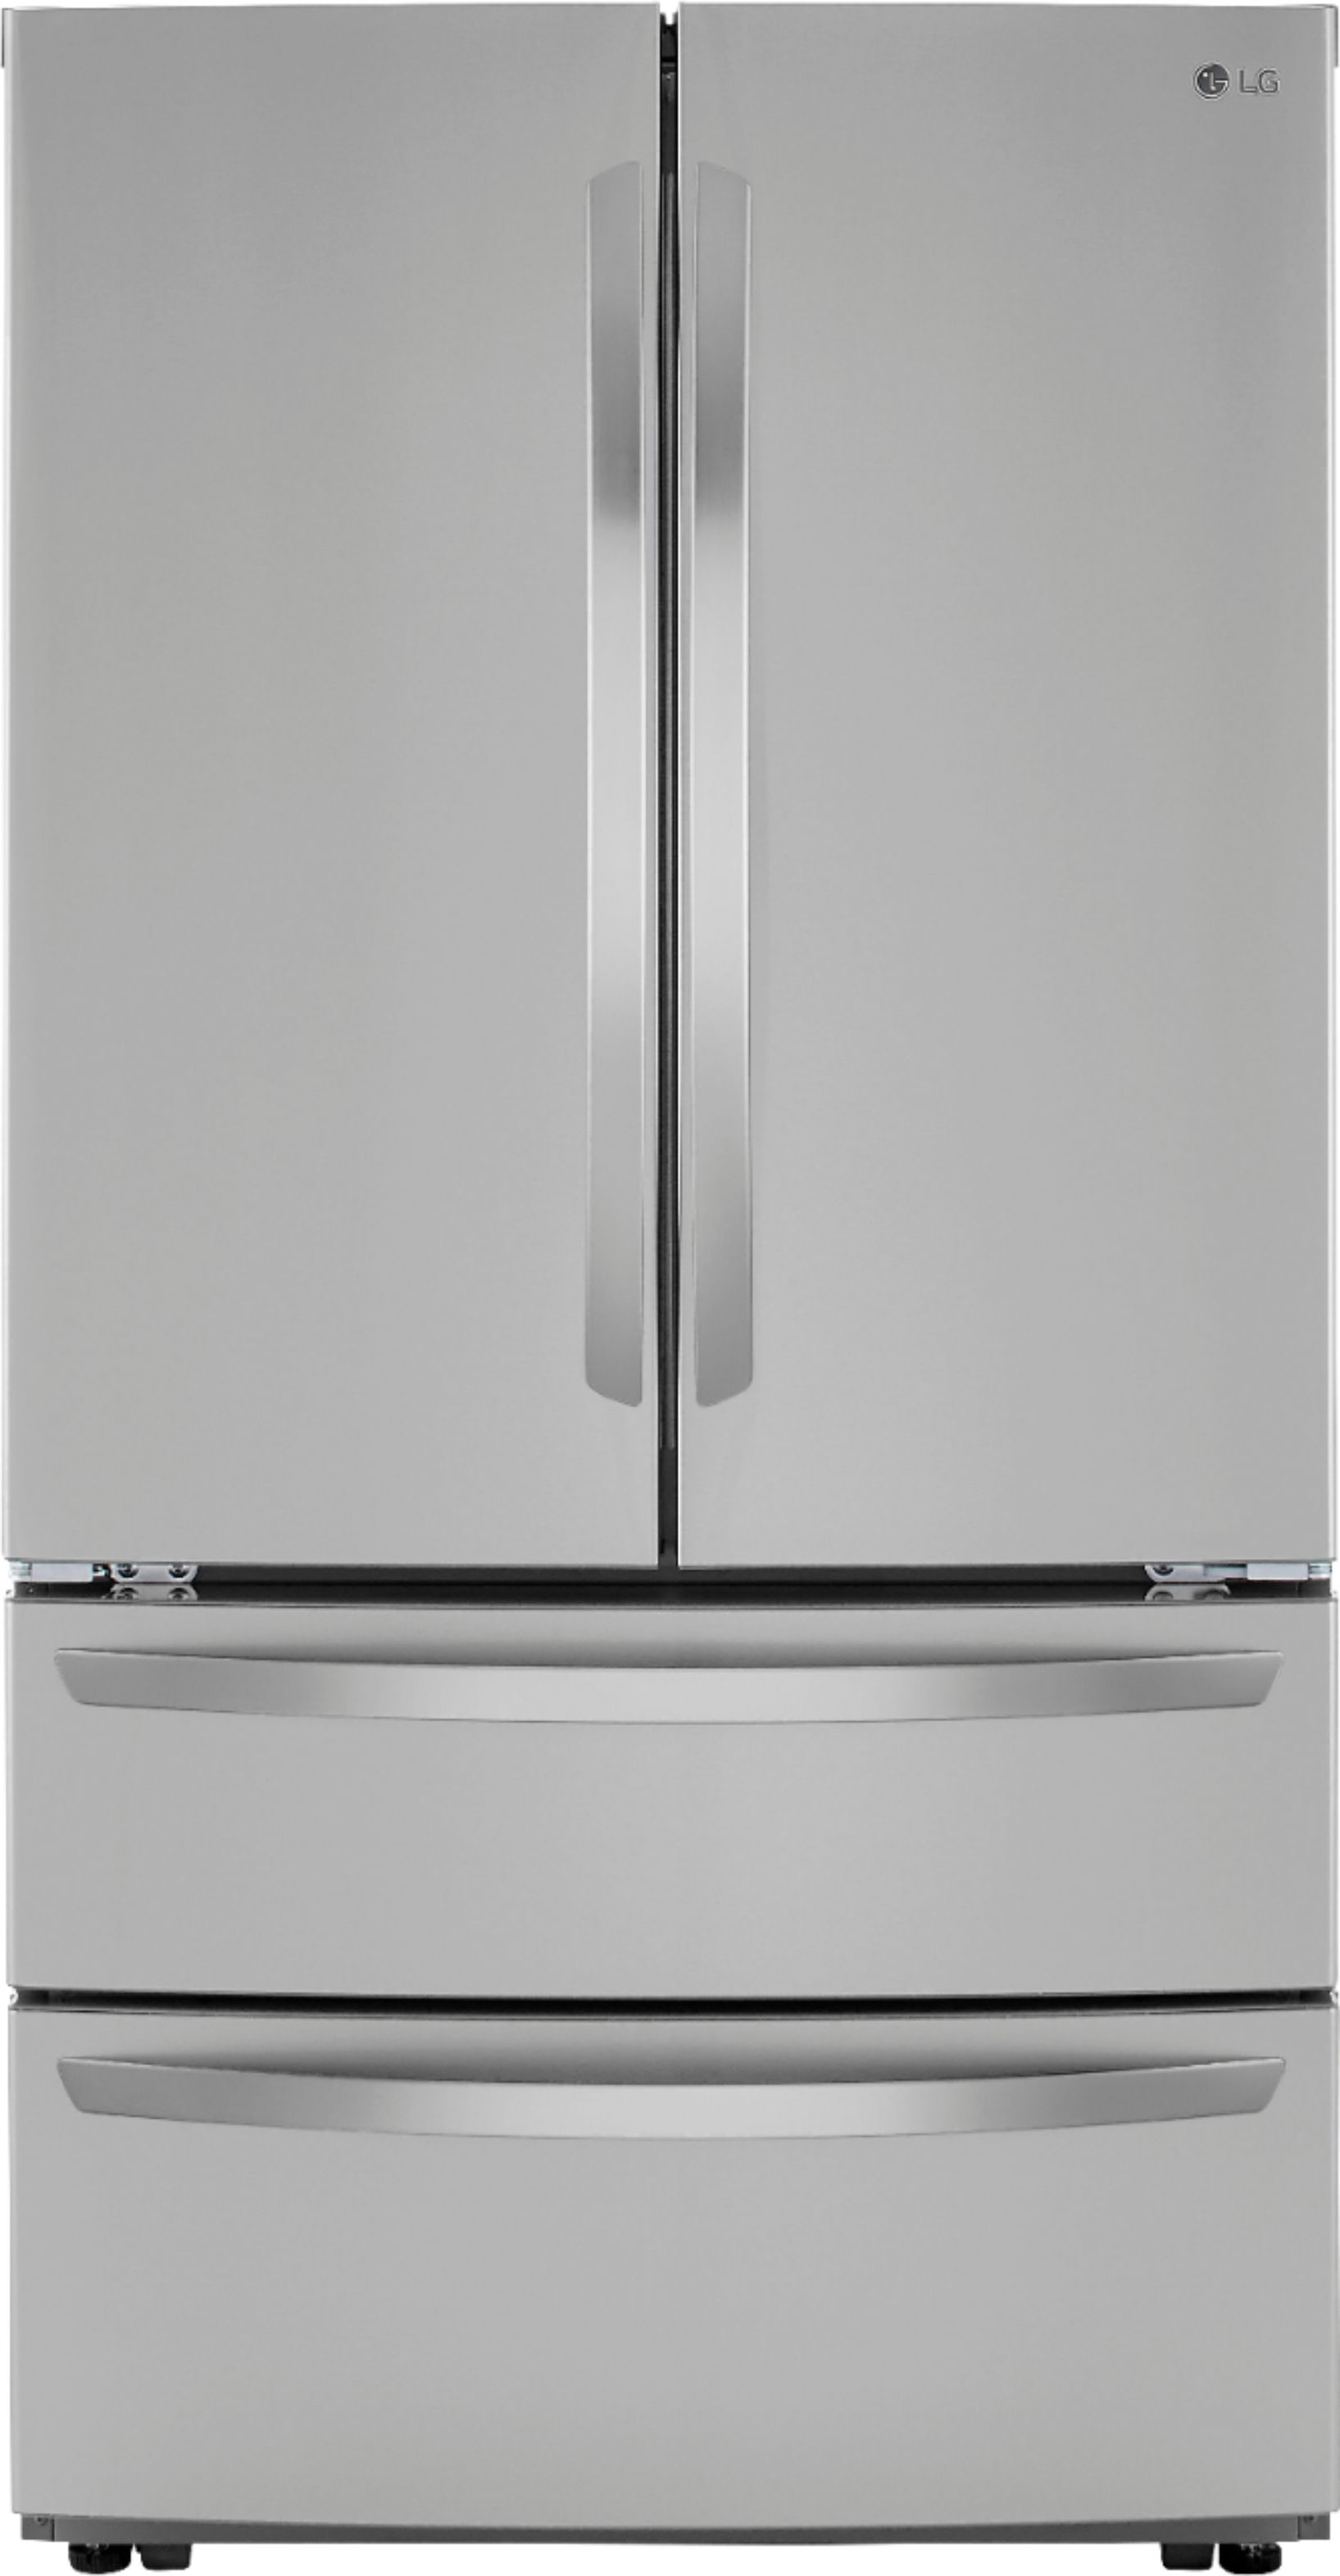 Desobediencia Extranjero emparedado LG 22.7 Cu. Ft. 4-Door French Door Counter-Depth Refrigerator with Double  Freezer and Internal Water Dispenser Stainless steel LMWC23626S - Best Buy